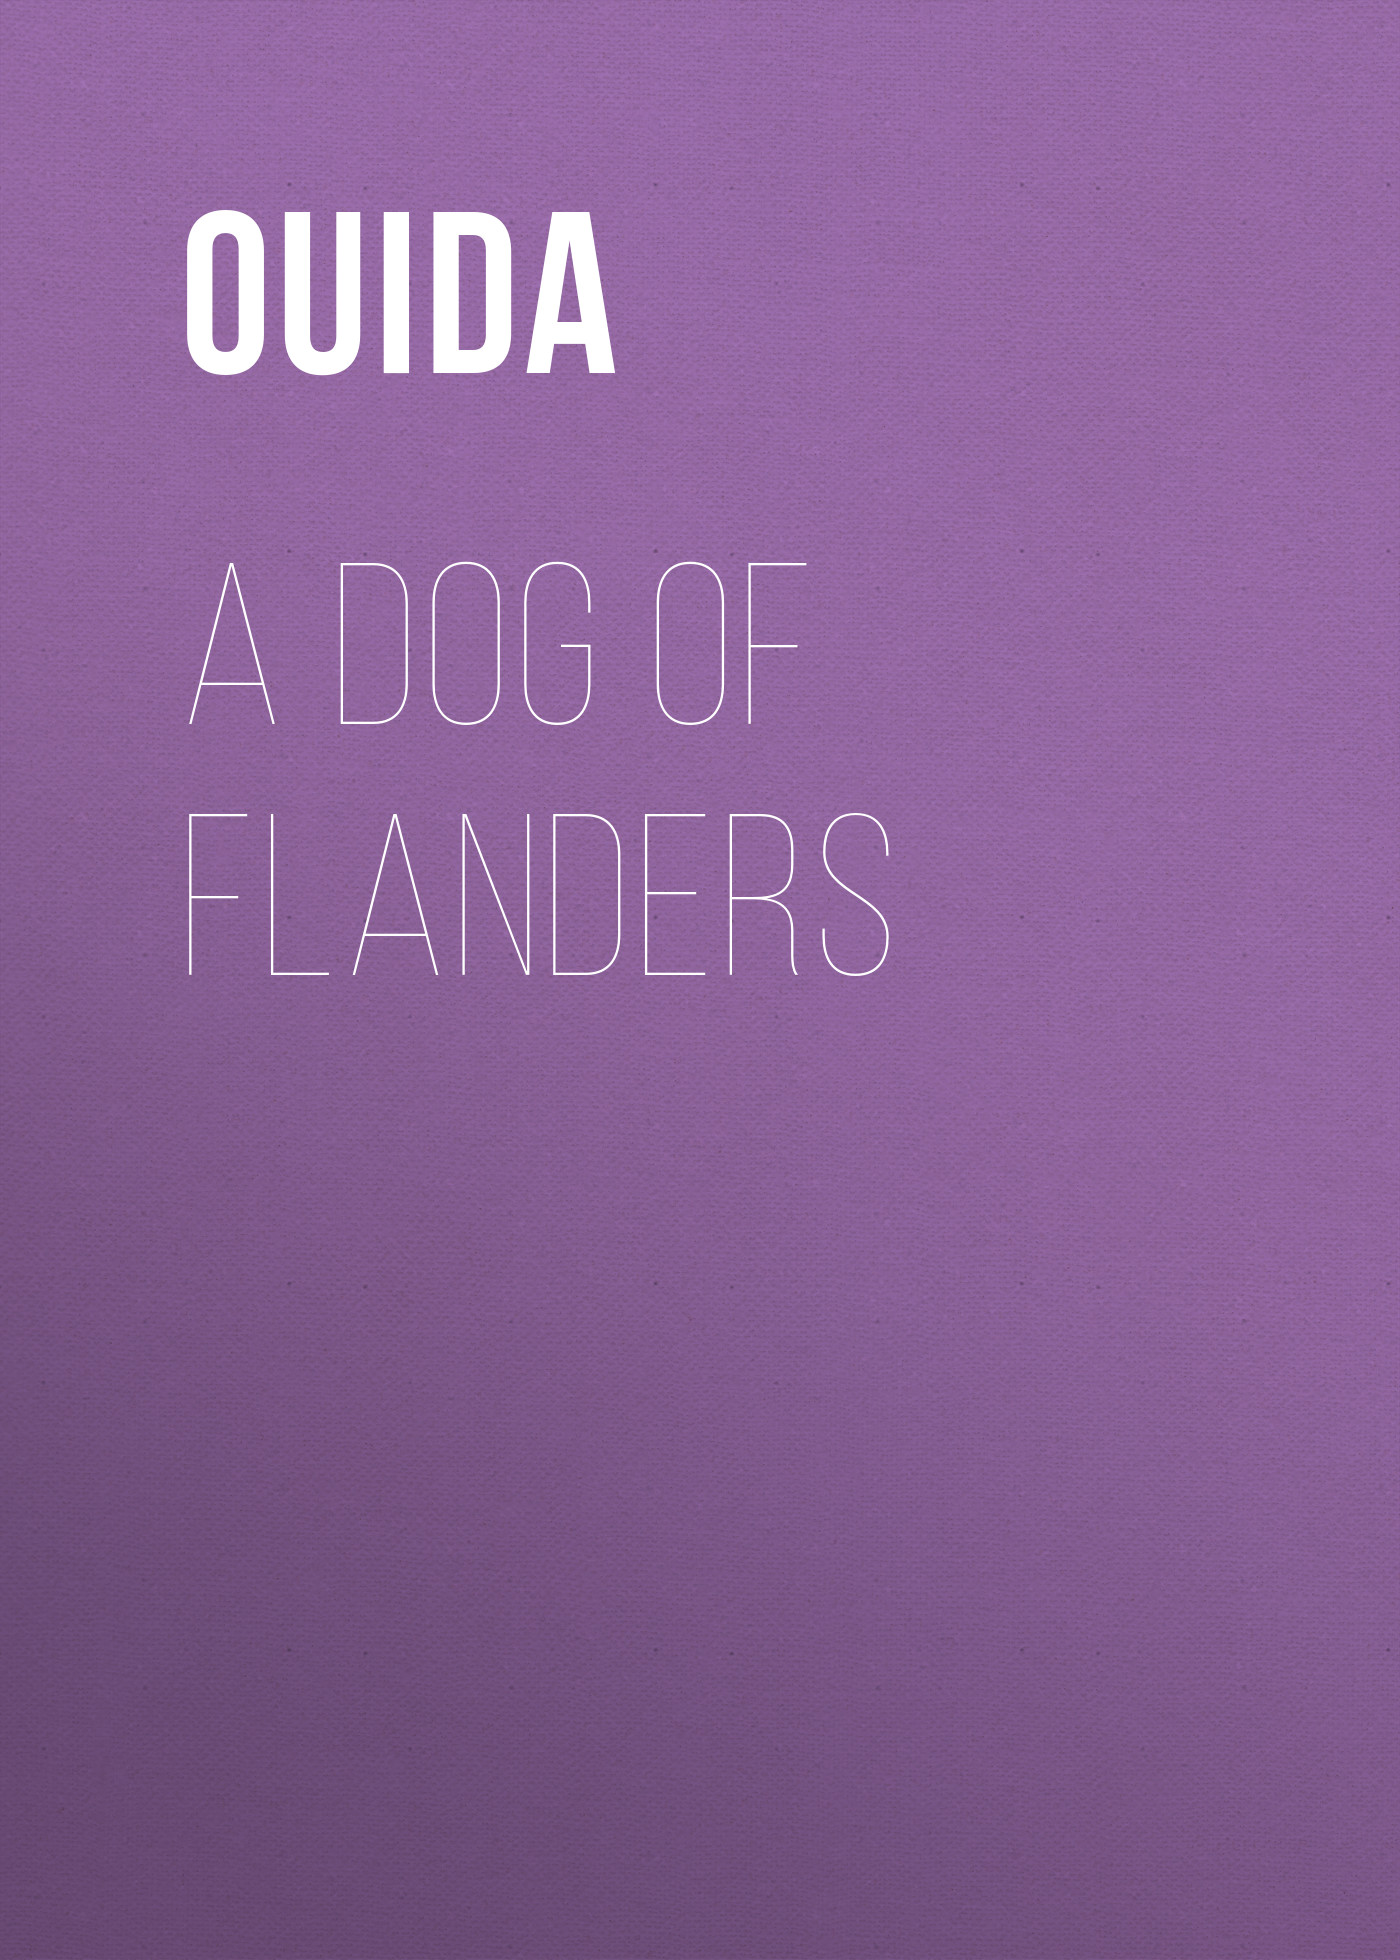 Книга A Dog of Flanders из серии , созданная  Ouida, может относится к жанру Зарубежные детские книги, Зарубежная старинная литература, Зарубежная классика. Стоимость электронной книги A Dog of Flanders с идентификатором 36363958 составляет 0 руб.